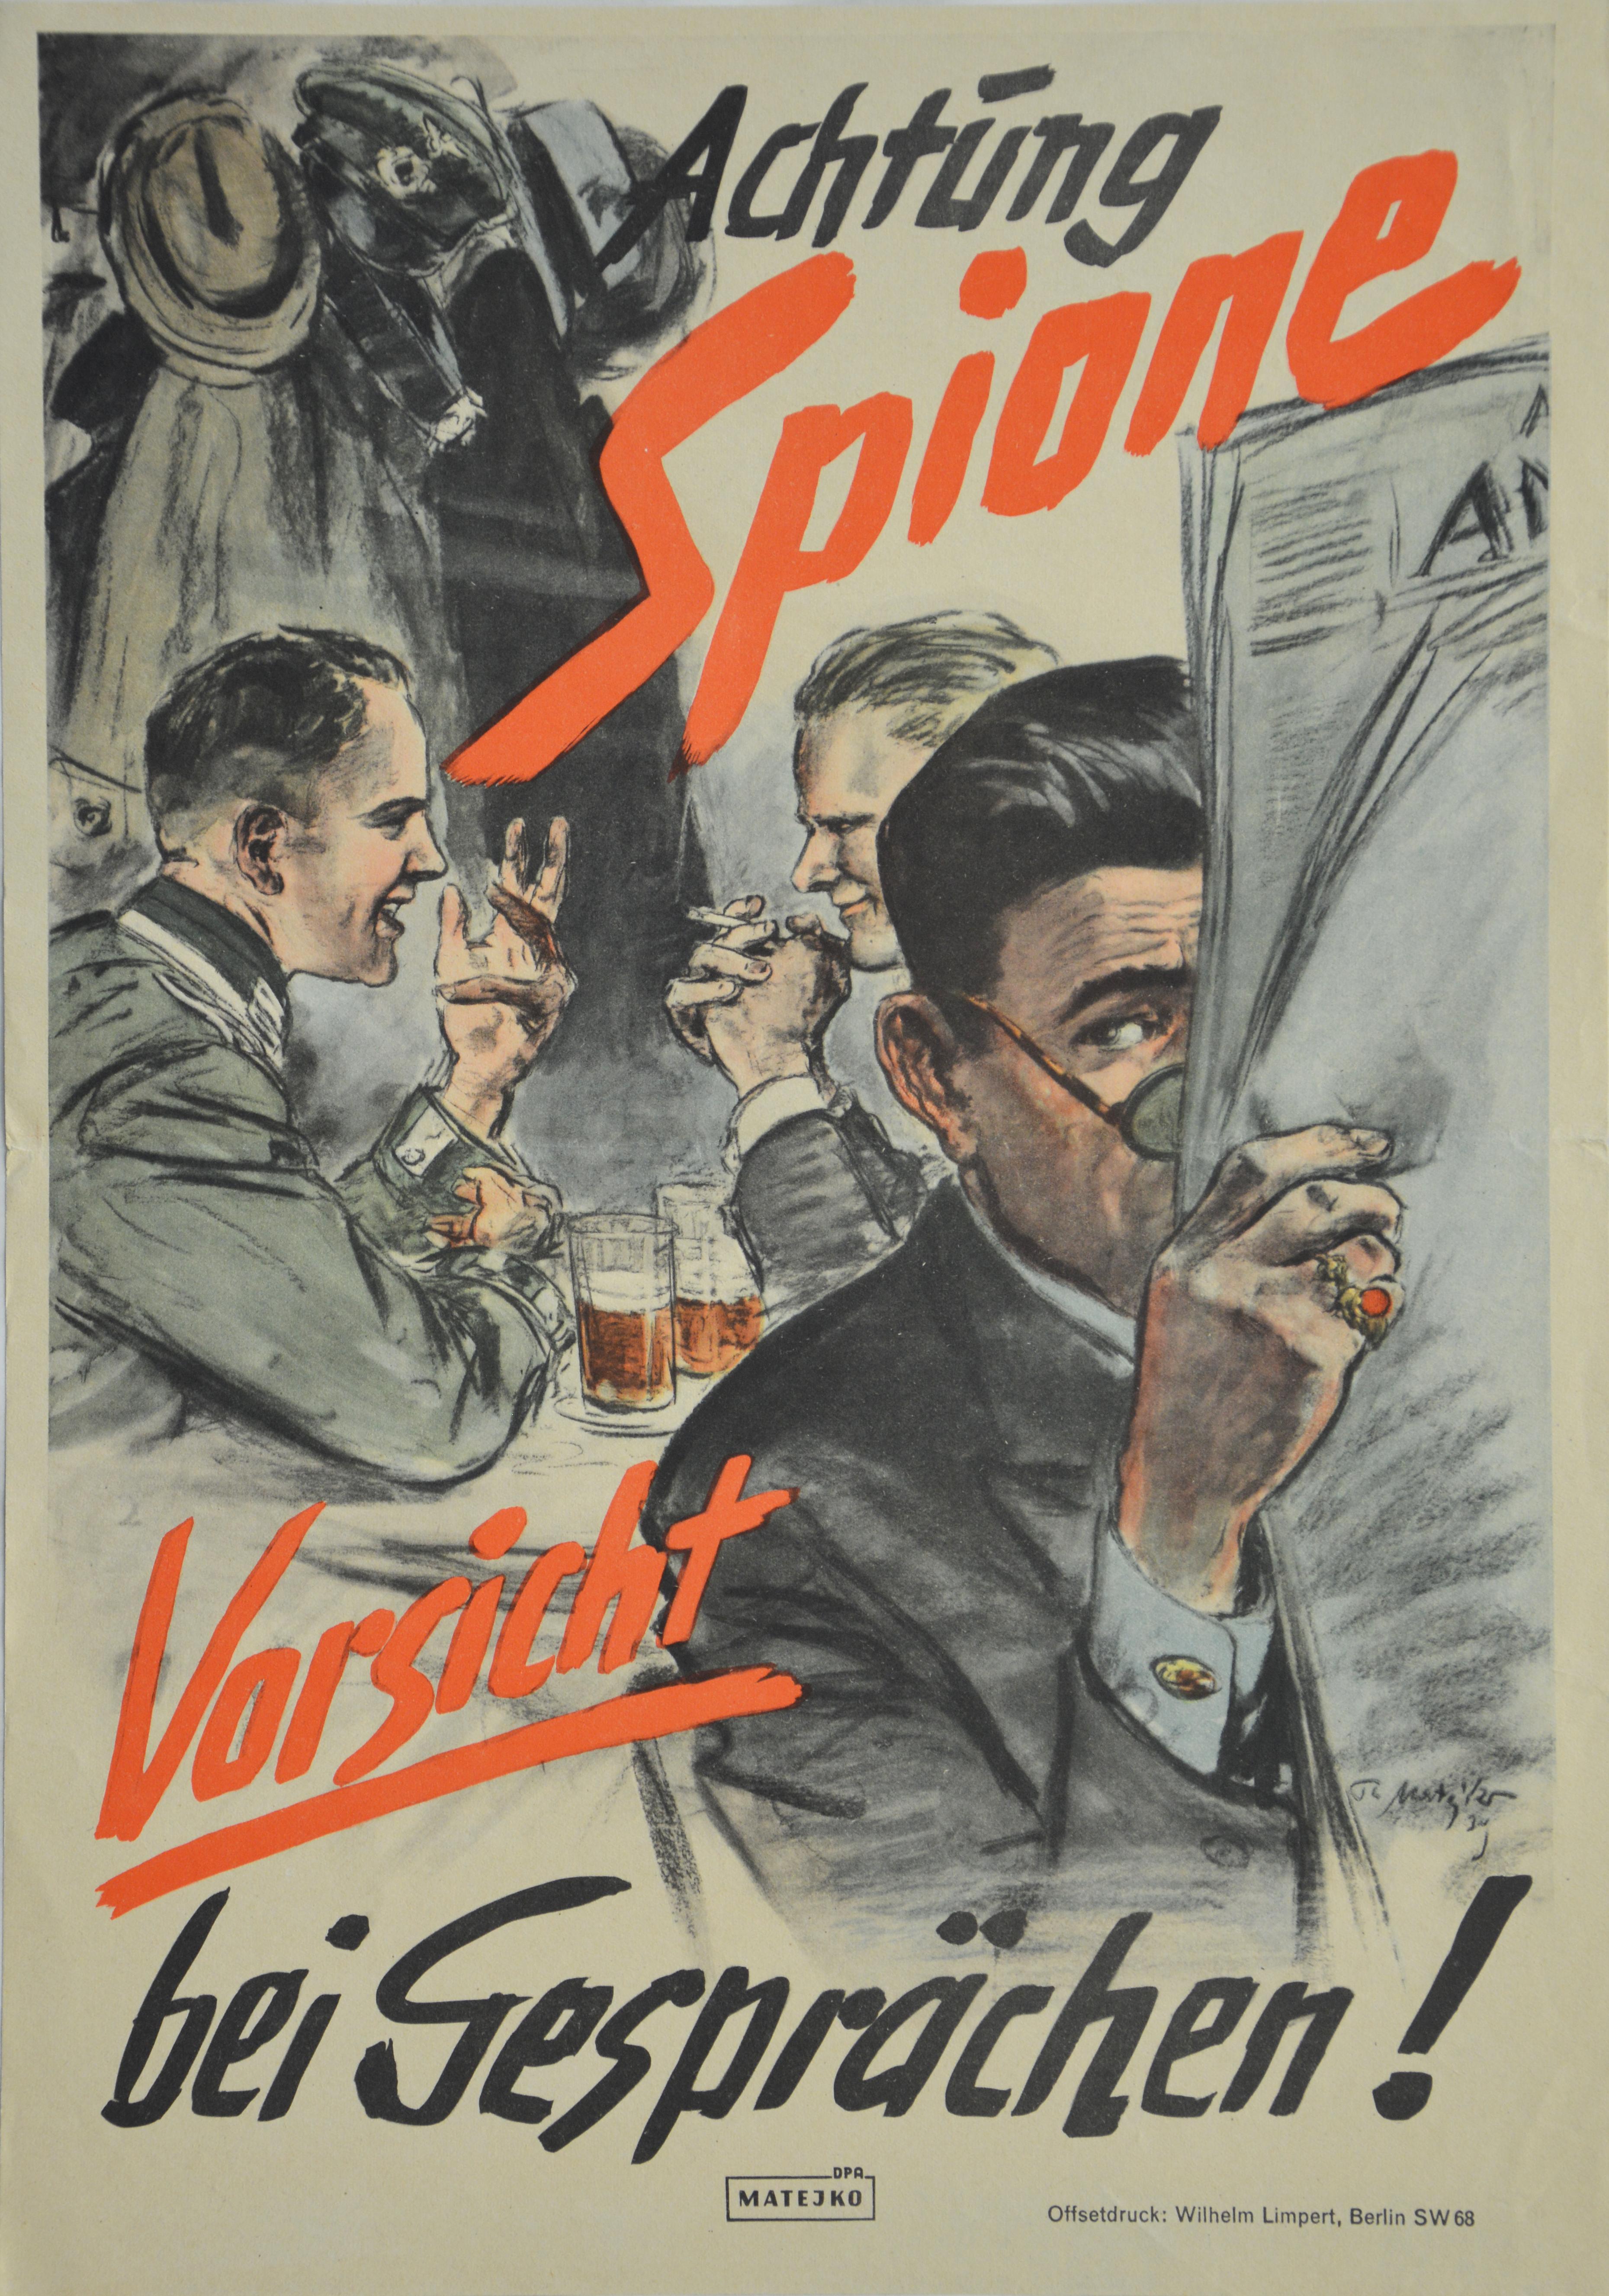 [Nationalsozialistisches Anti-Spionage Plakat, 1939]